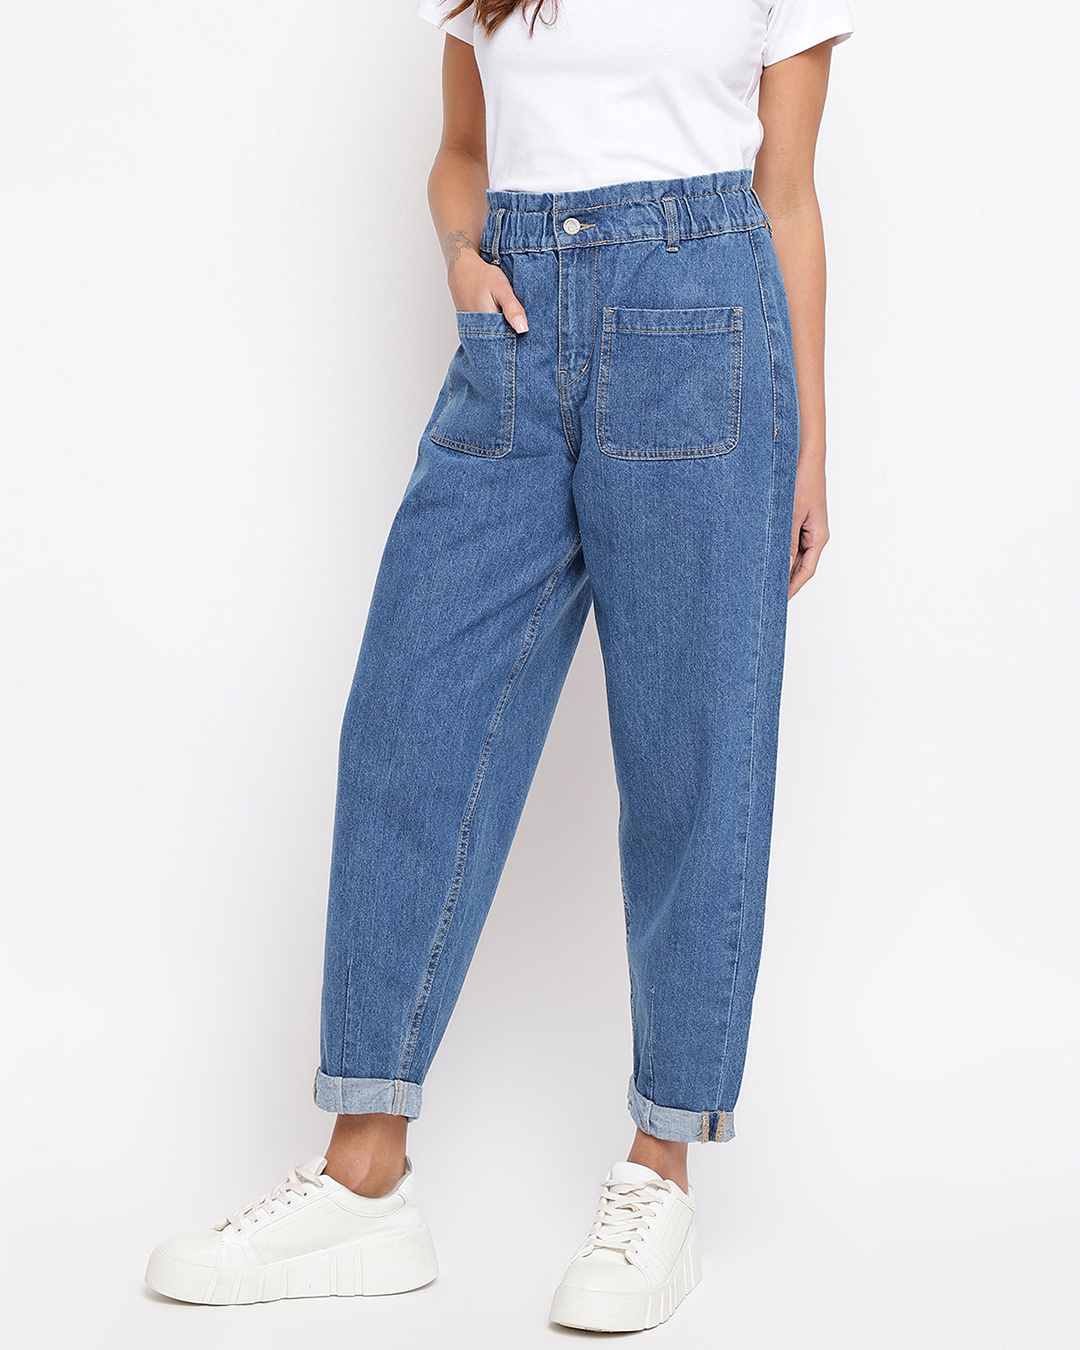 Buy Women's Blue Jeans Online at Bewakoof